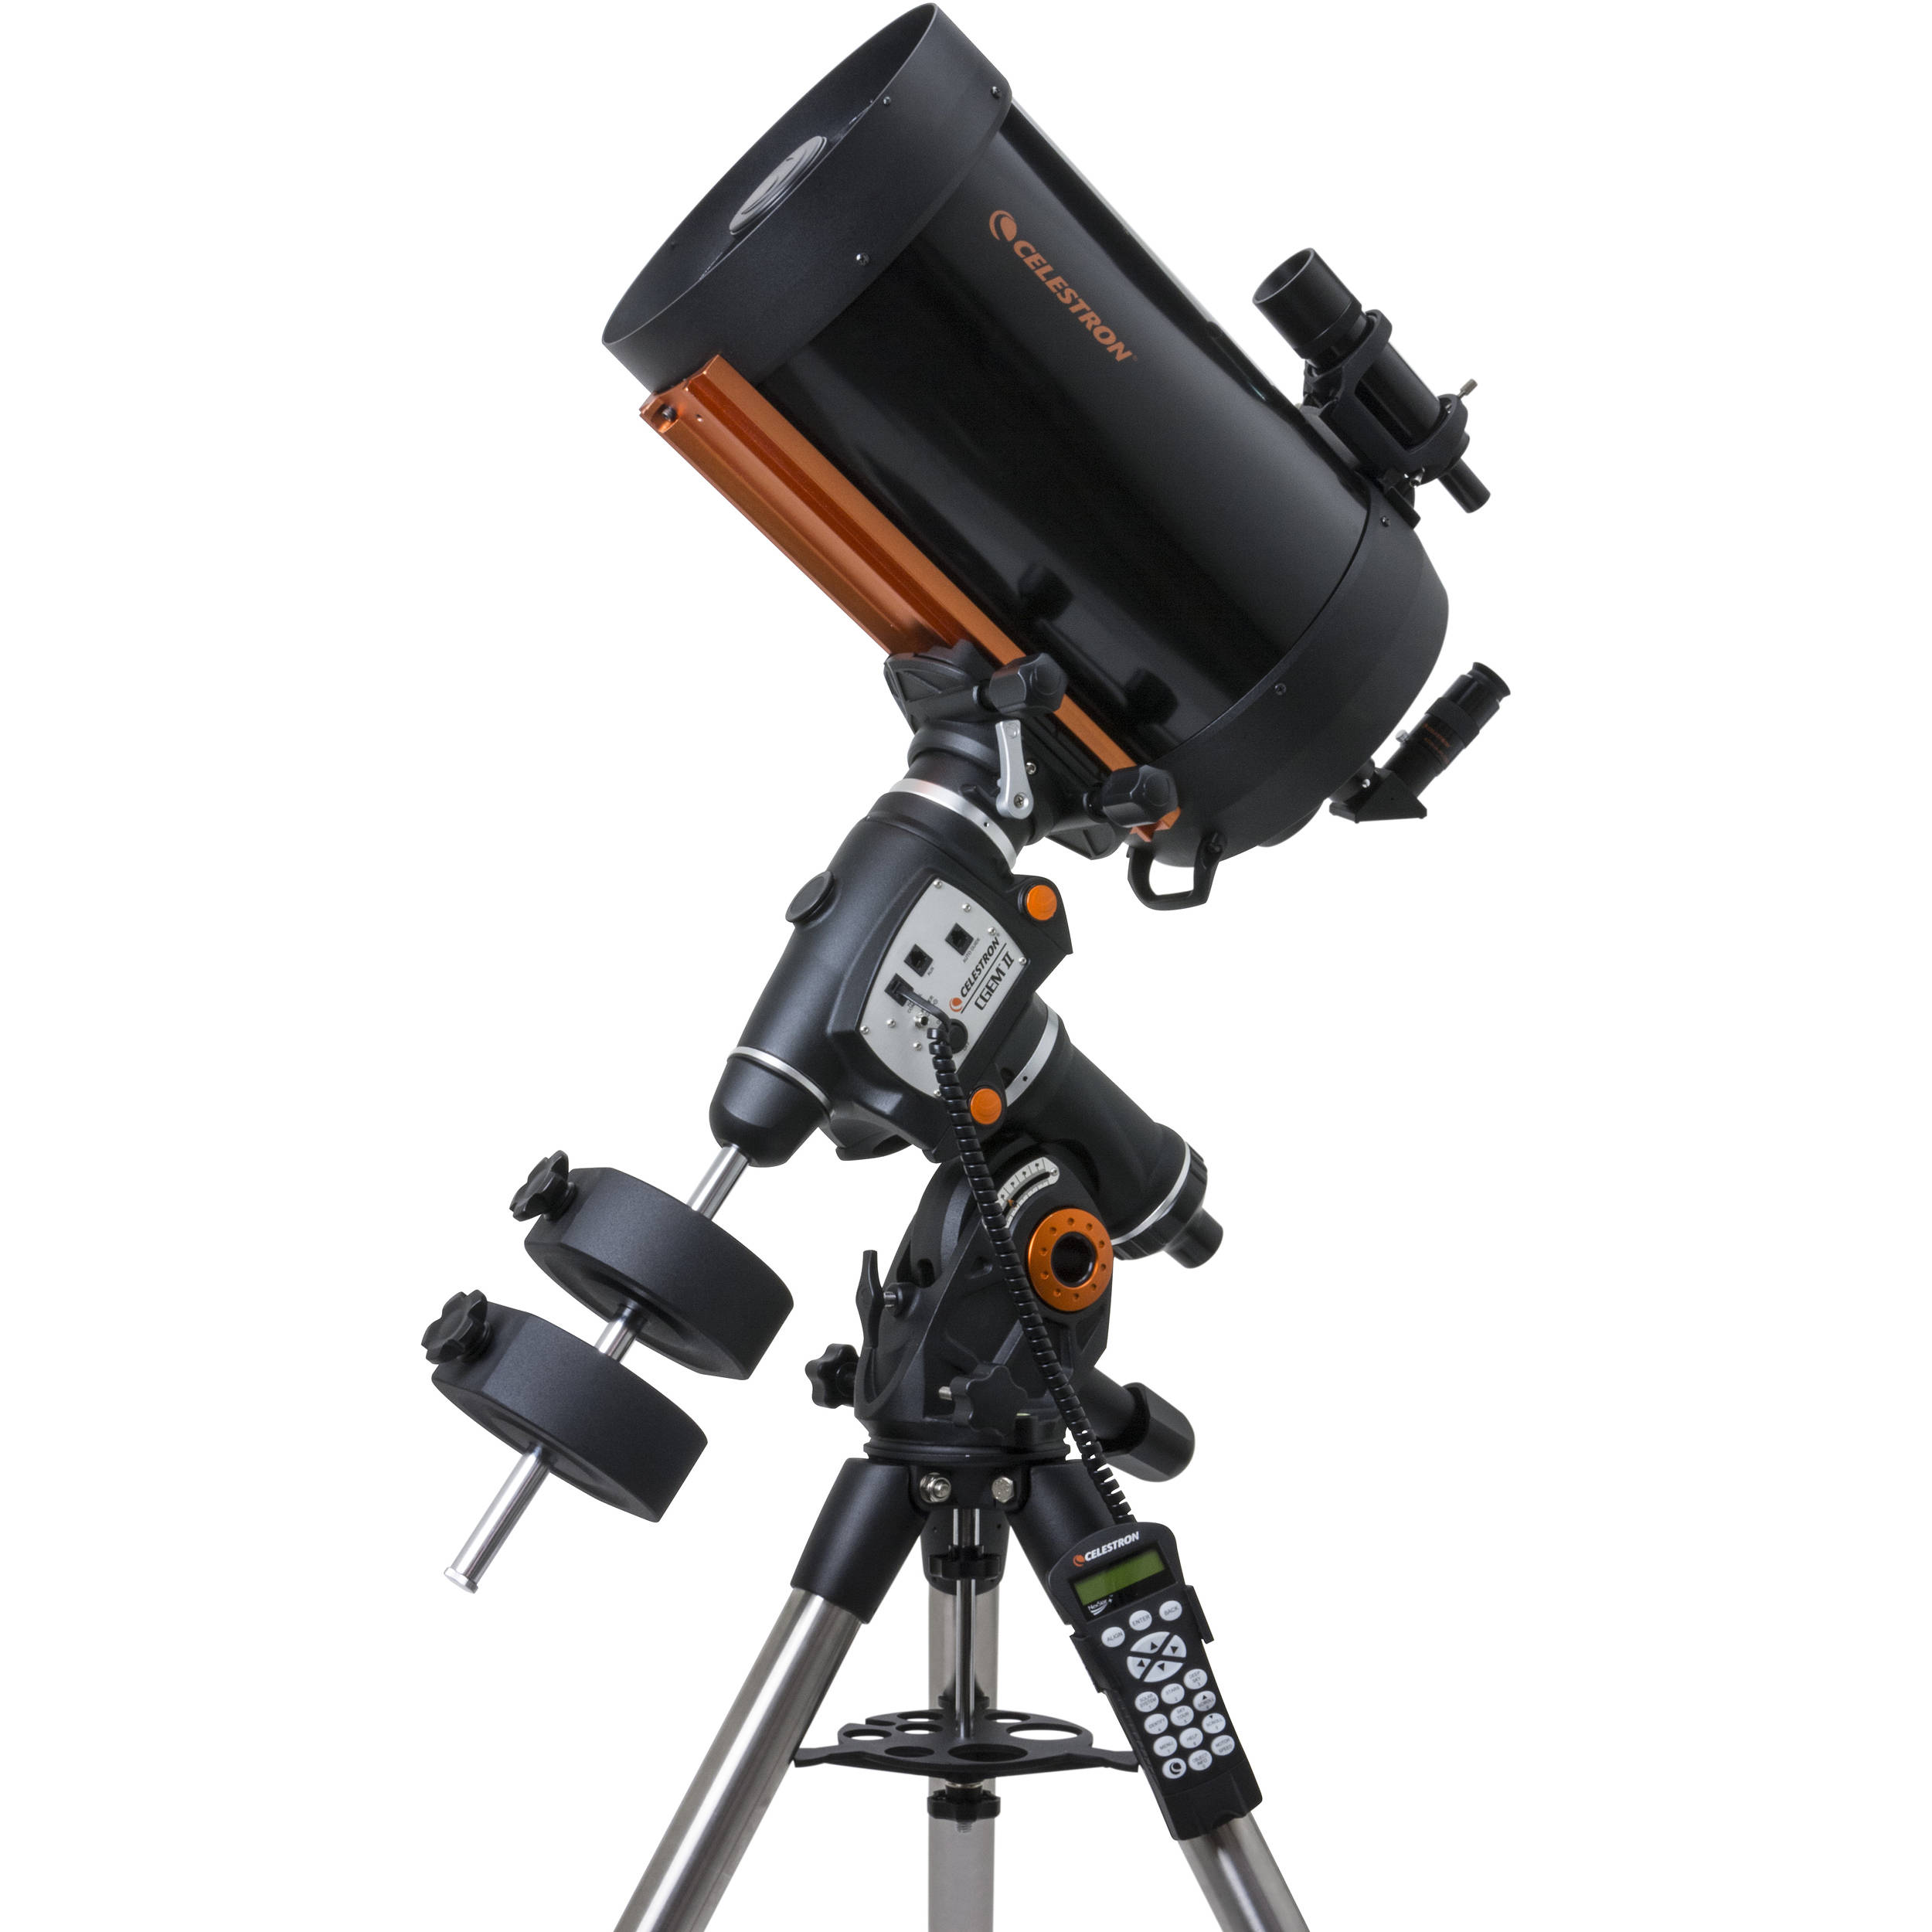 cassegrain telescope